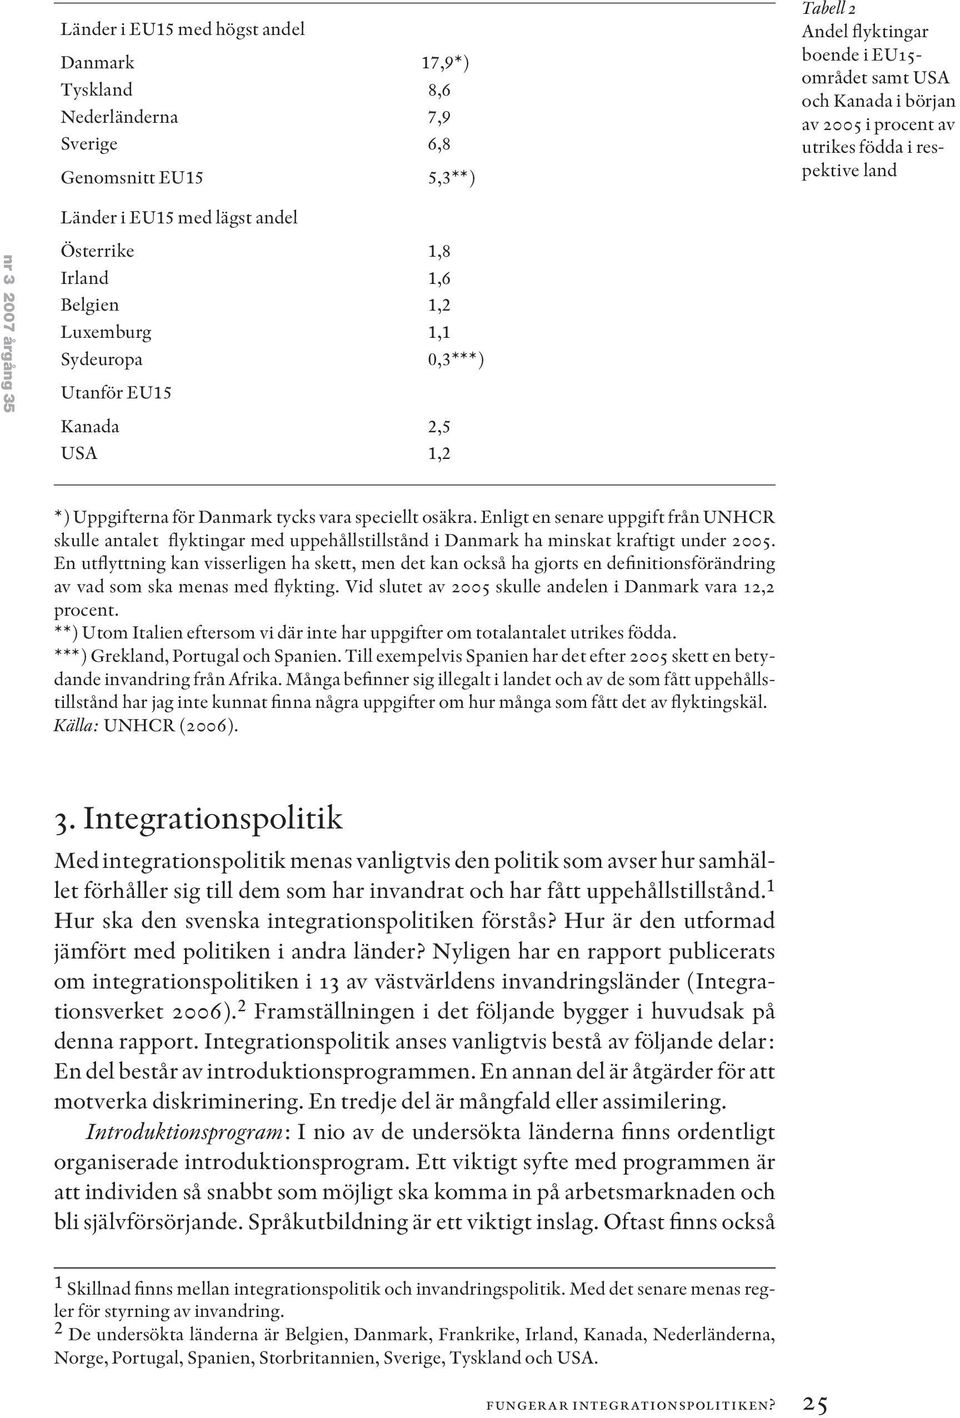 Uppgifterna för Danmark tycks vara speciellt osäkra. Enligt en senare uppgift från UNHCR skulle antalet flyktingar med uppehållstillstånd i Danmark ha minskat kraftigt under 2005.